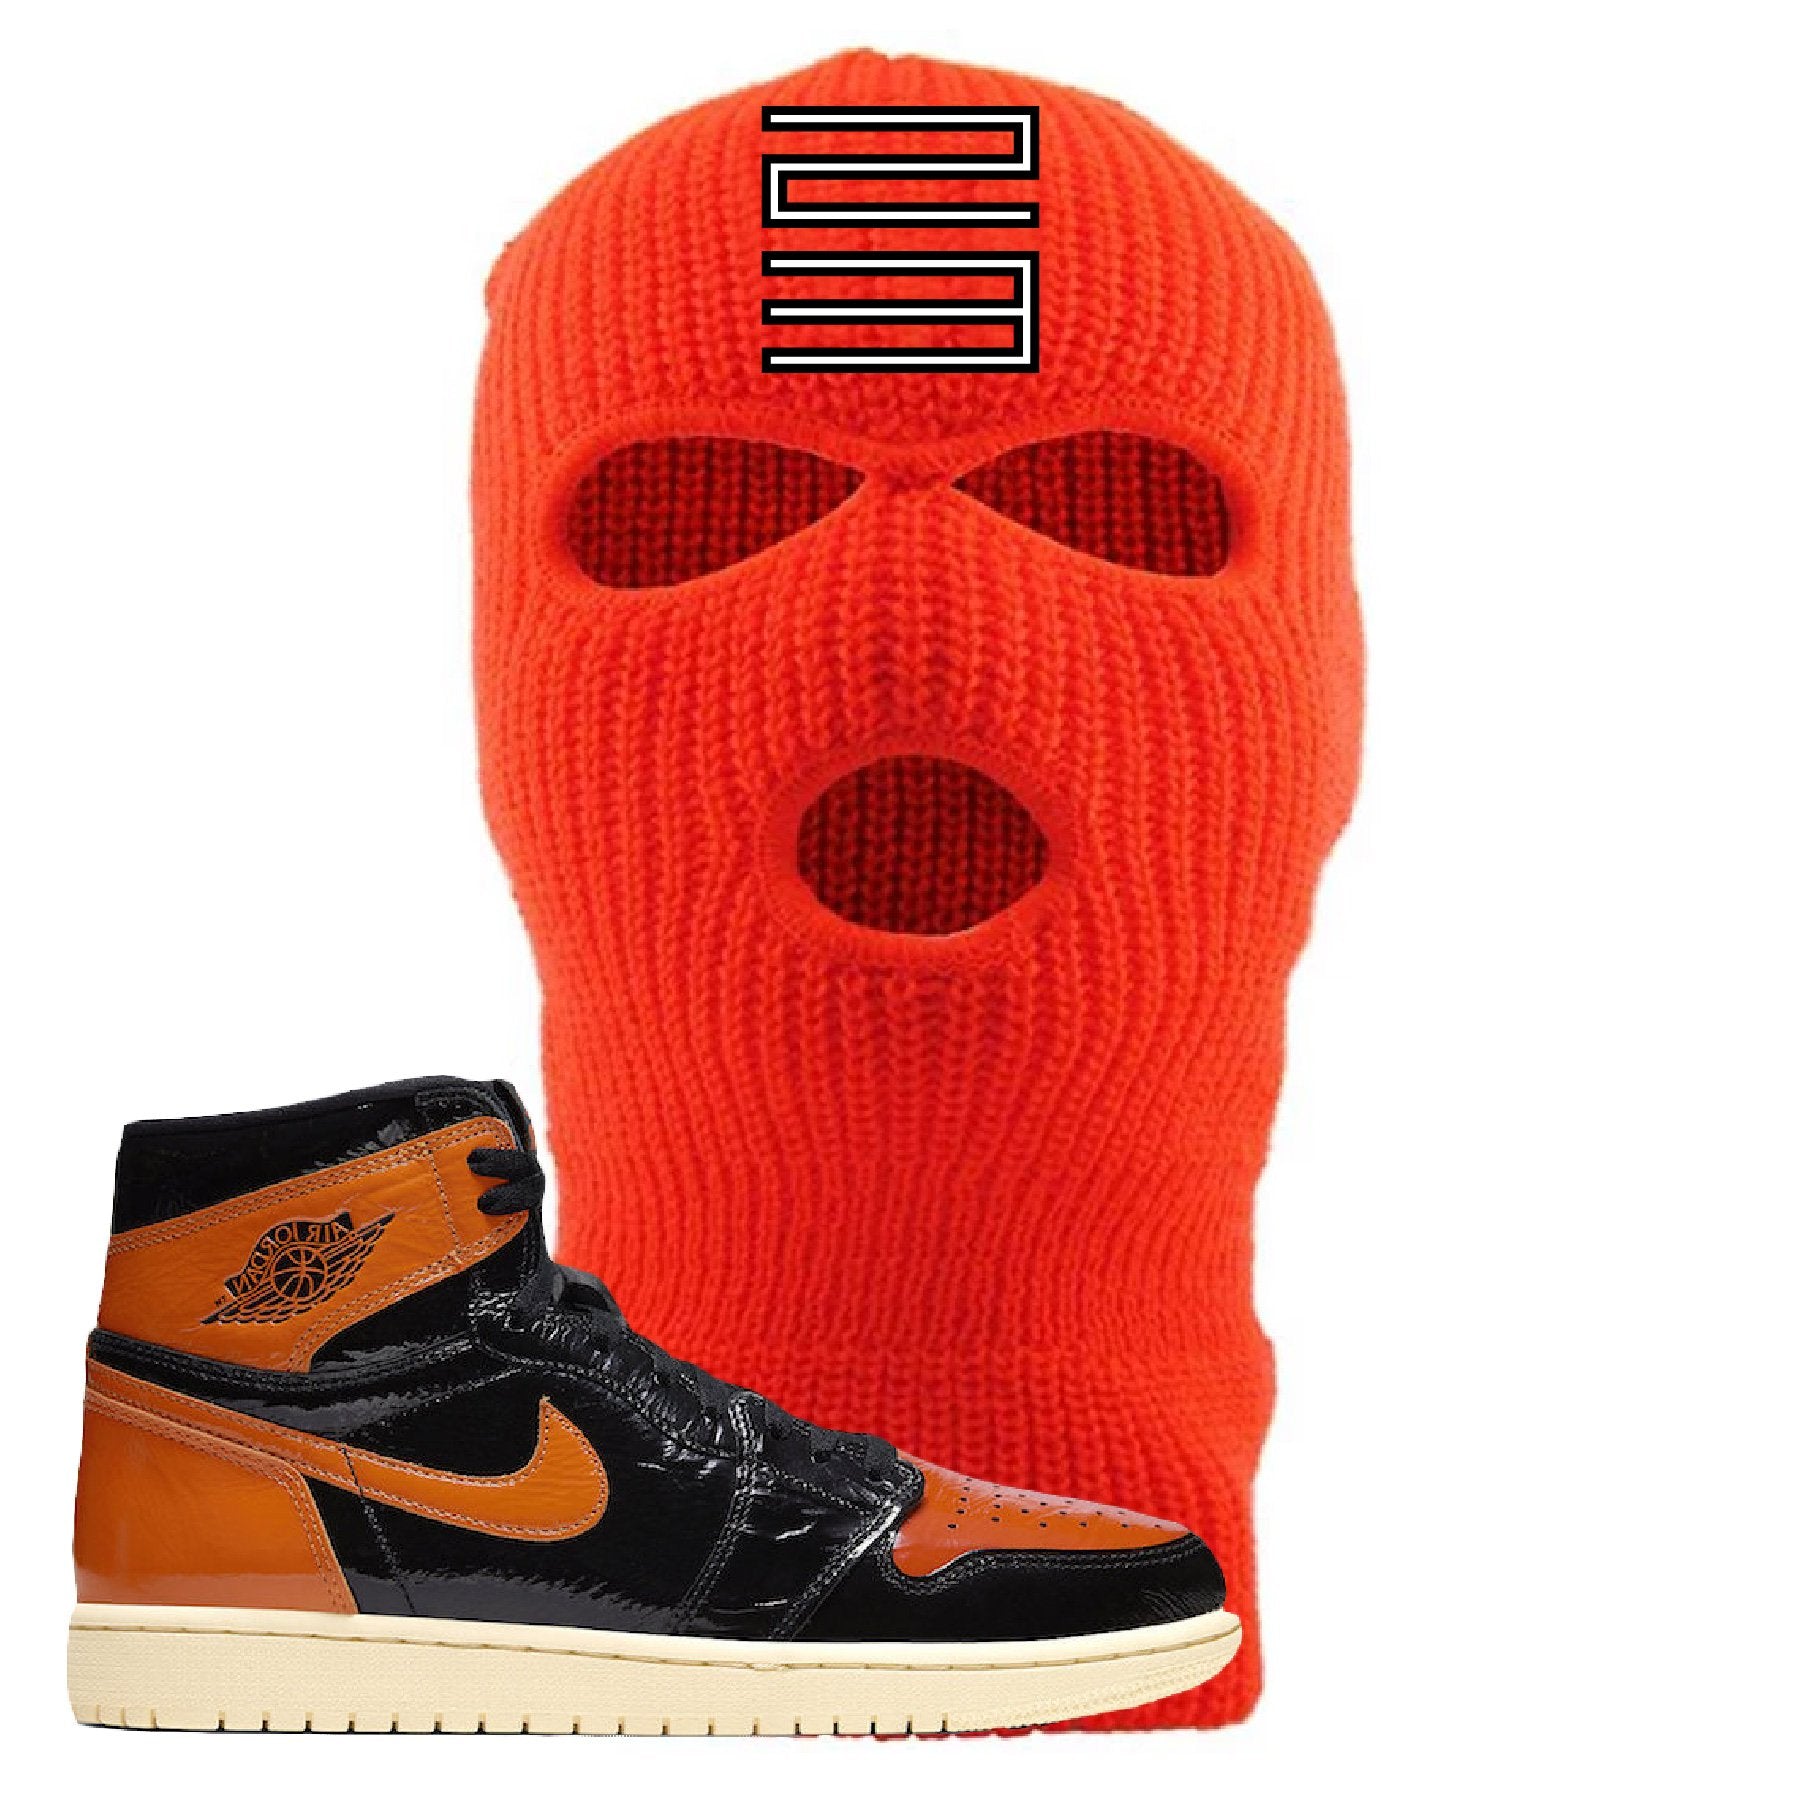 Jordan 1 Shattered Backboard Jordan 11 23 Safety Orange Sneaker Hook Up Ski Mask